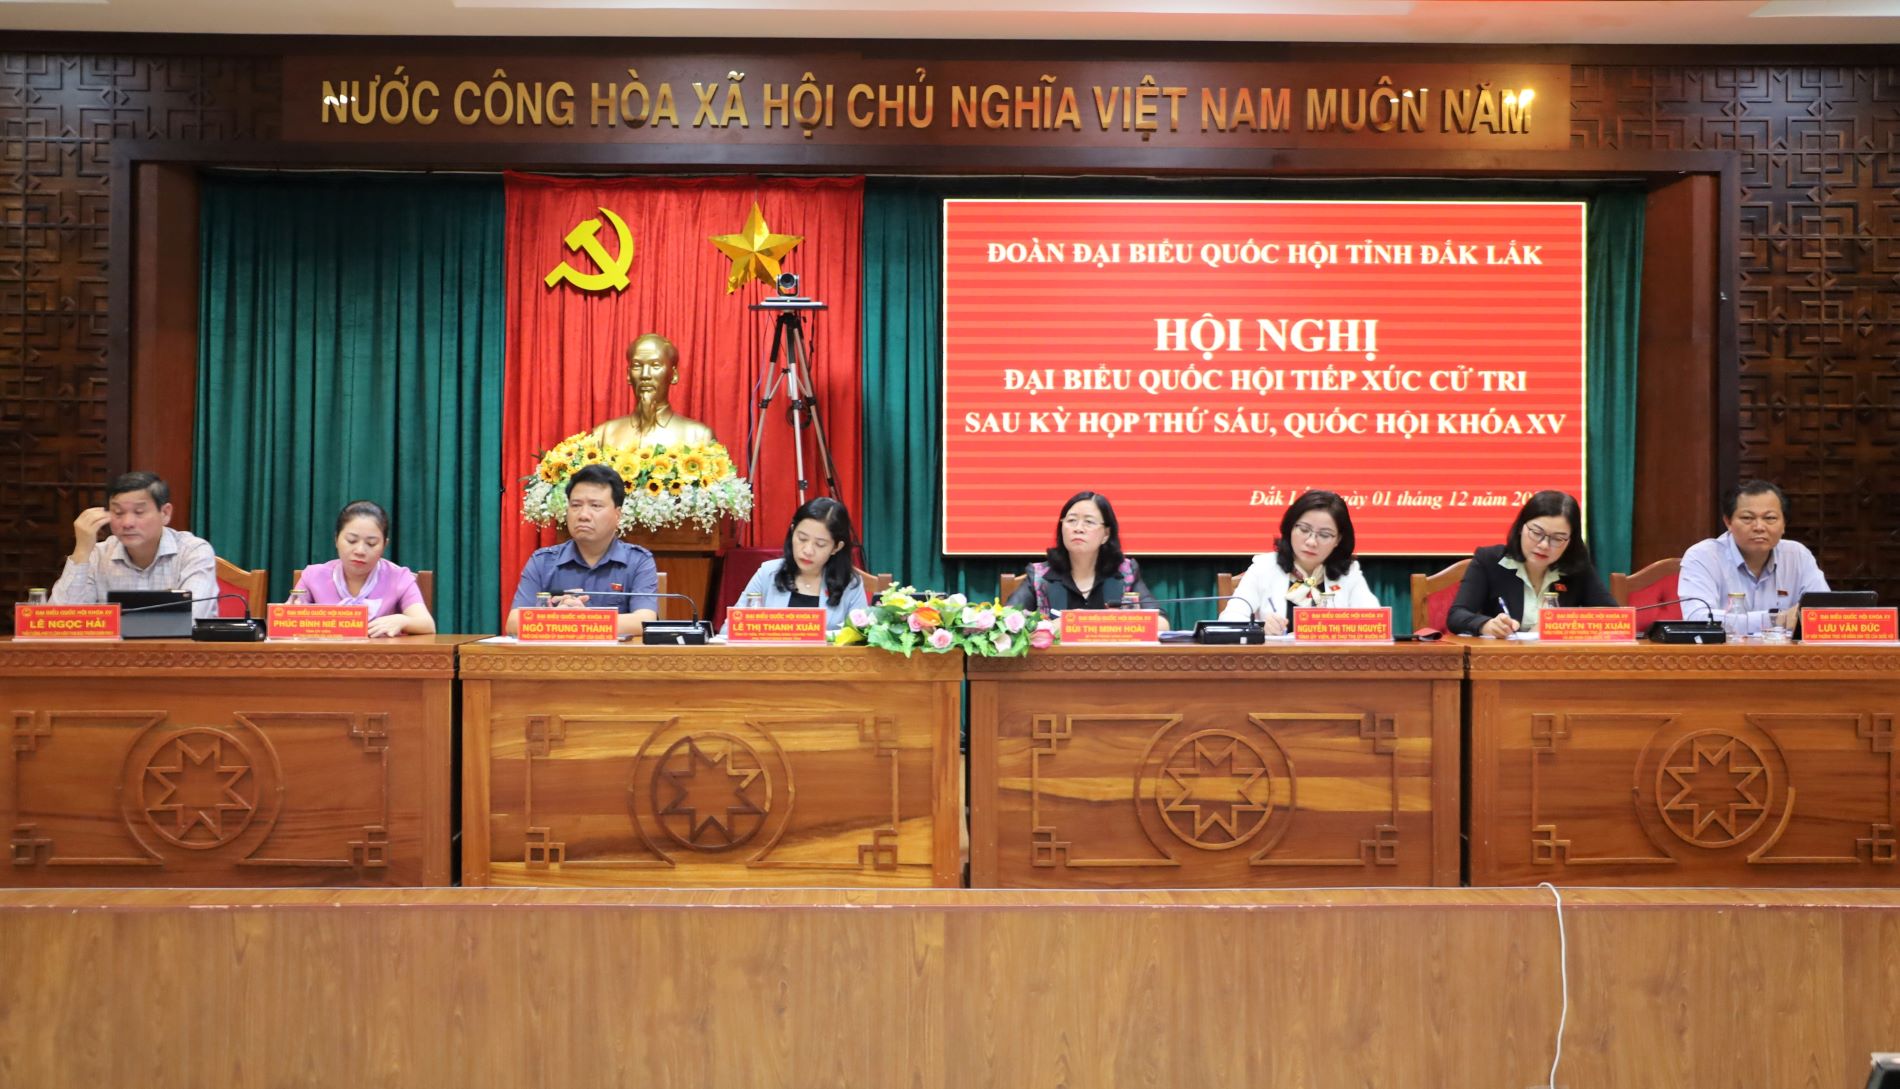 Đoàn Đại biểu Quốc hội tỉnh Đắk Lắk tiếp xúc cử tri sau Kỳ họp thứ 6, Quốc hội khóa XV